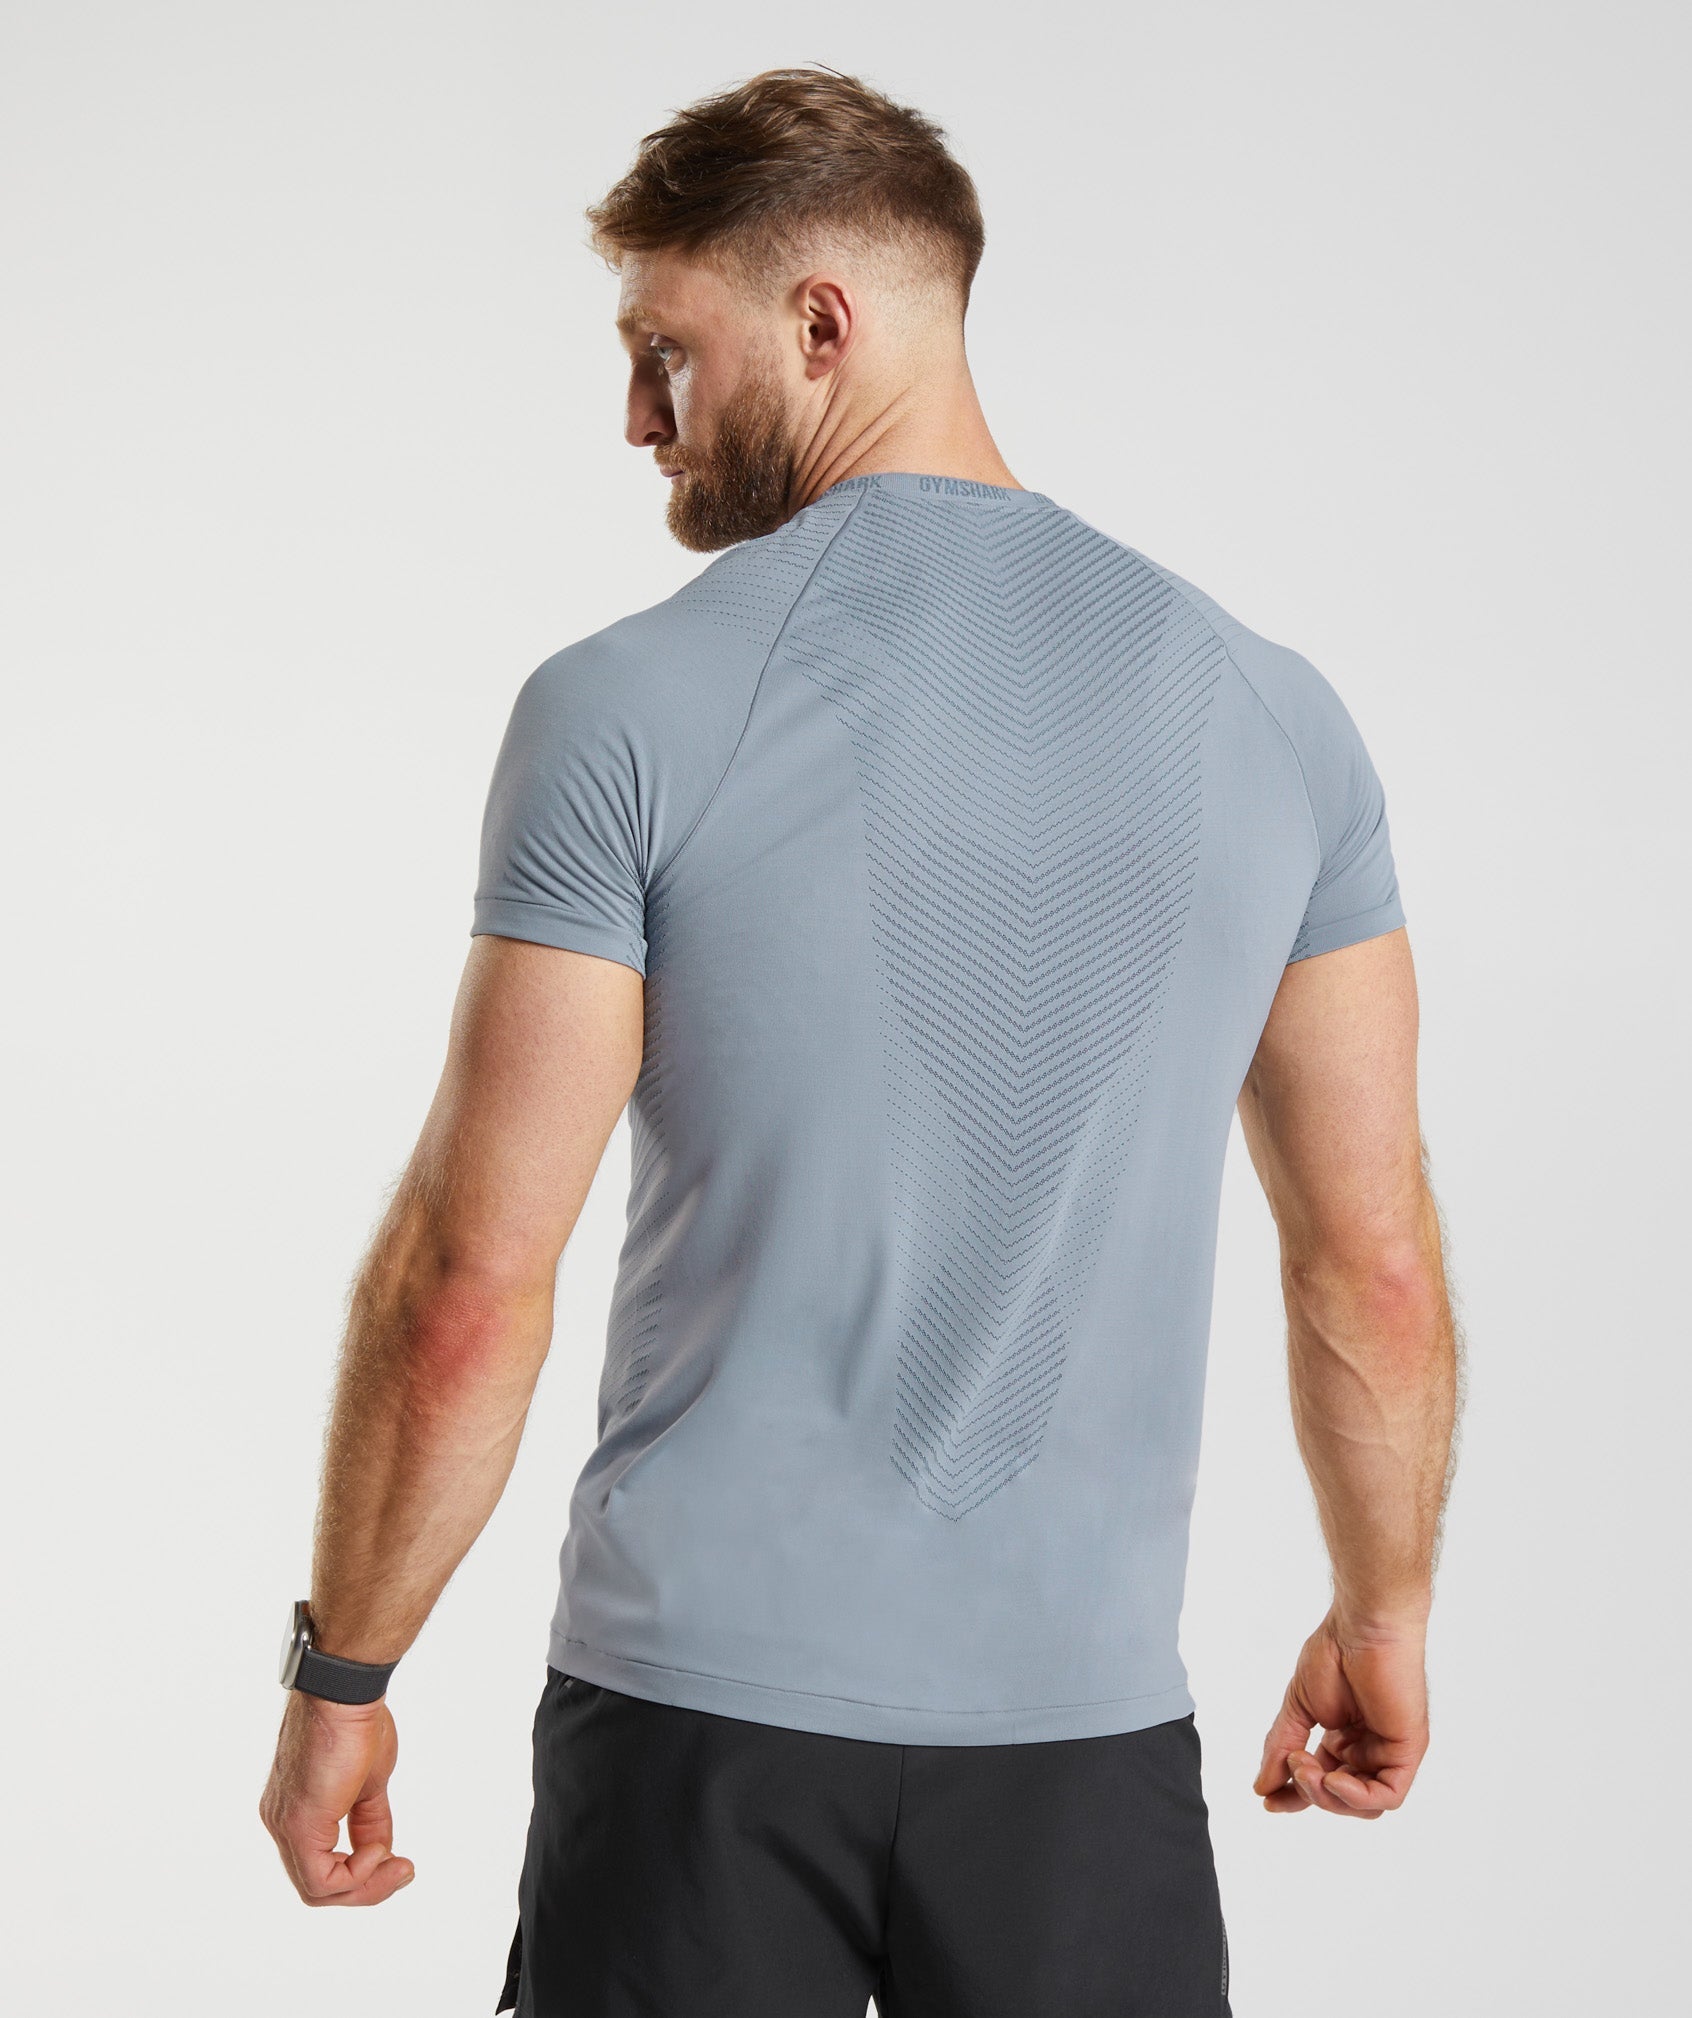 Apex Seamless T-Shirt in Drift Grey/Evening Blue